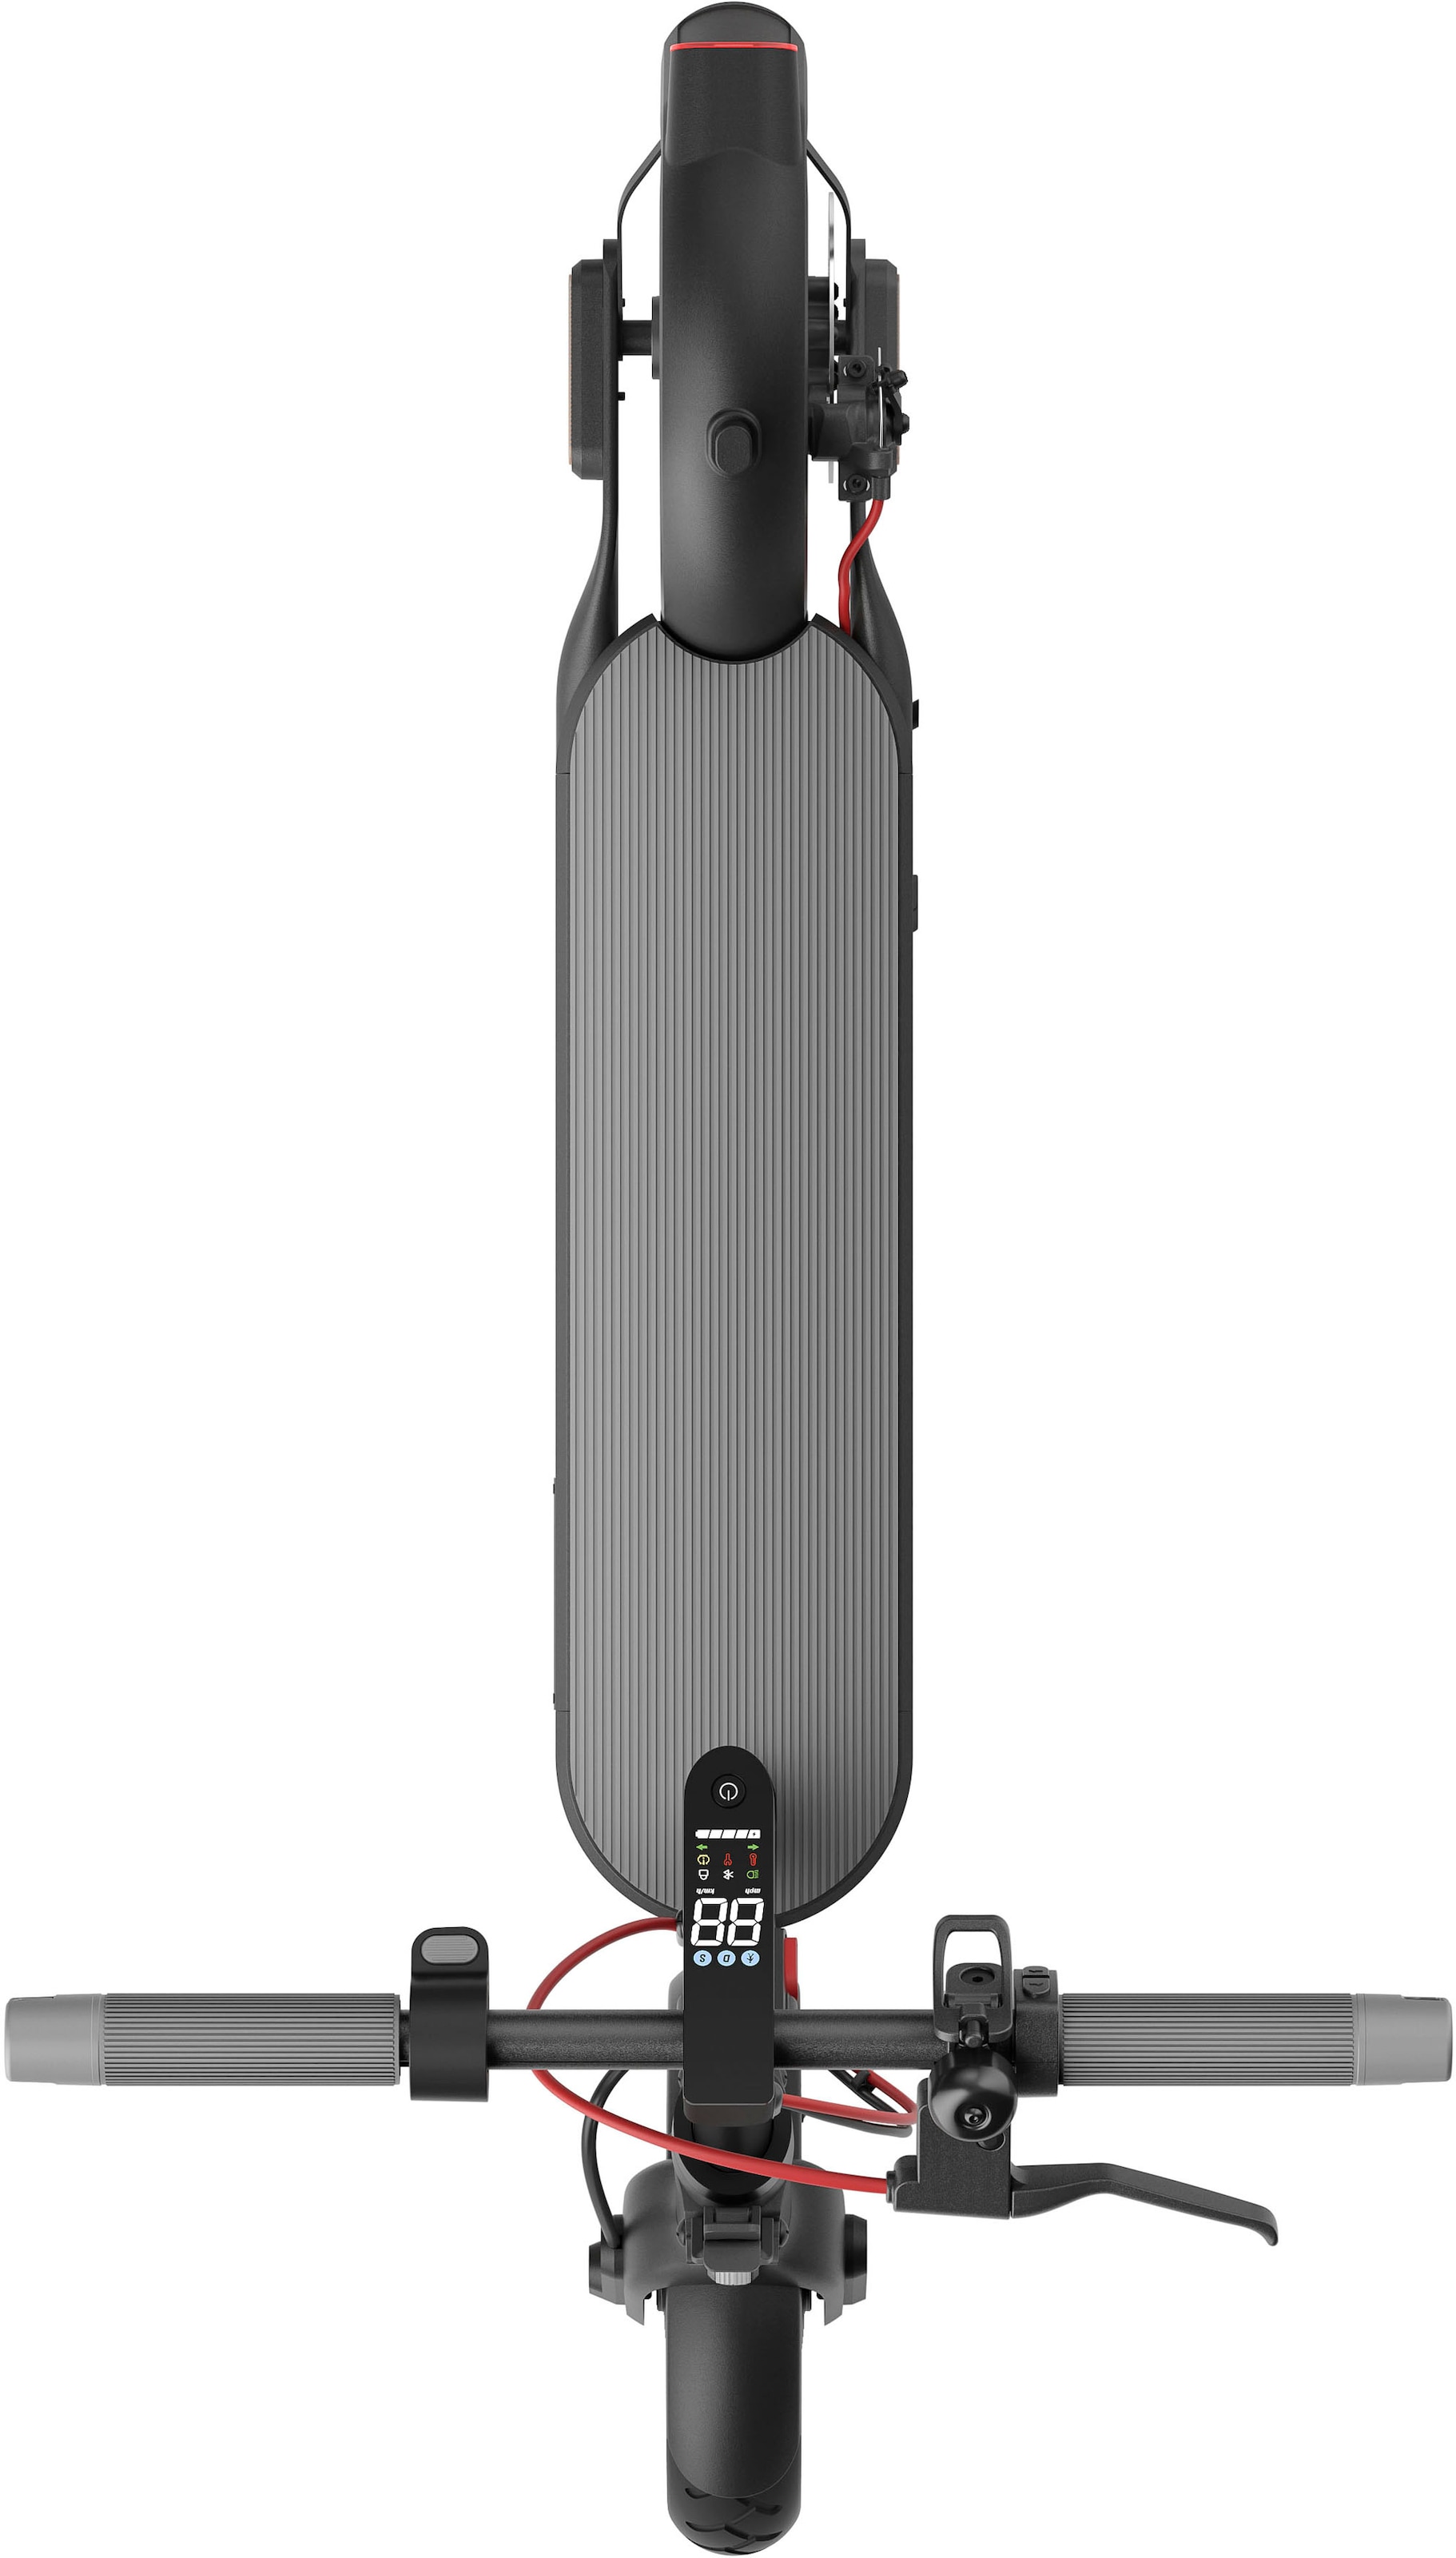 Xiaomi E-Scooter »Mi 4«, 20 km/h, 35 km, mit Straßenzulassung, bis zu 35 km Reichweite